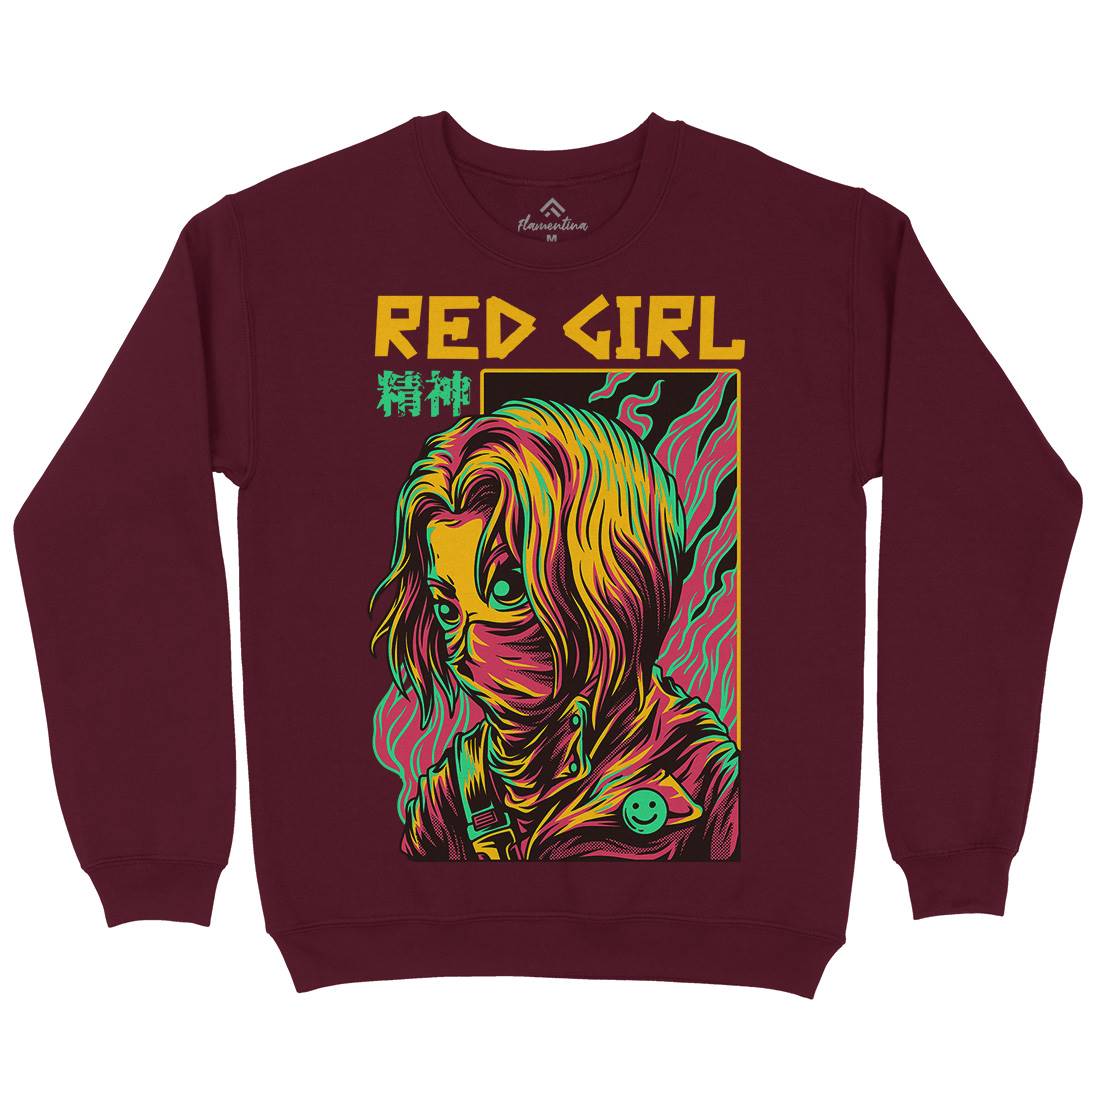 Red Girl Kids Crew Neck Sweatshirt Horror D694